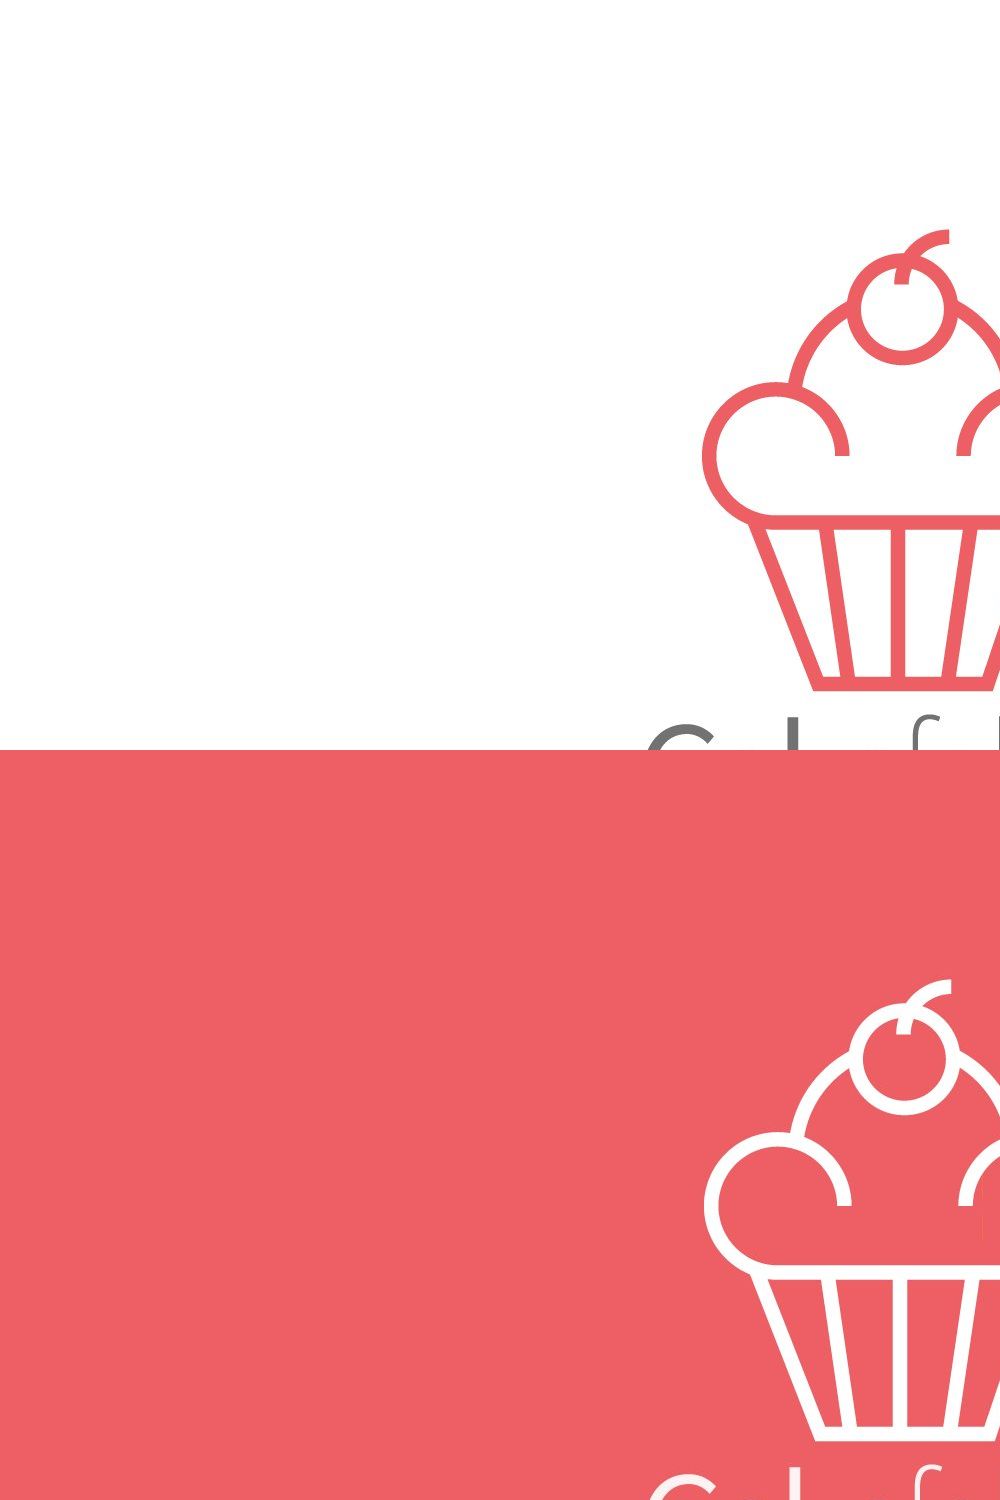 Cake logo, Bakery logo pinterest preview image.